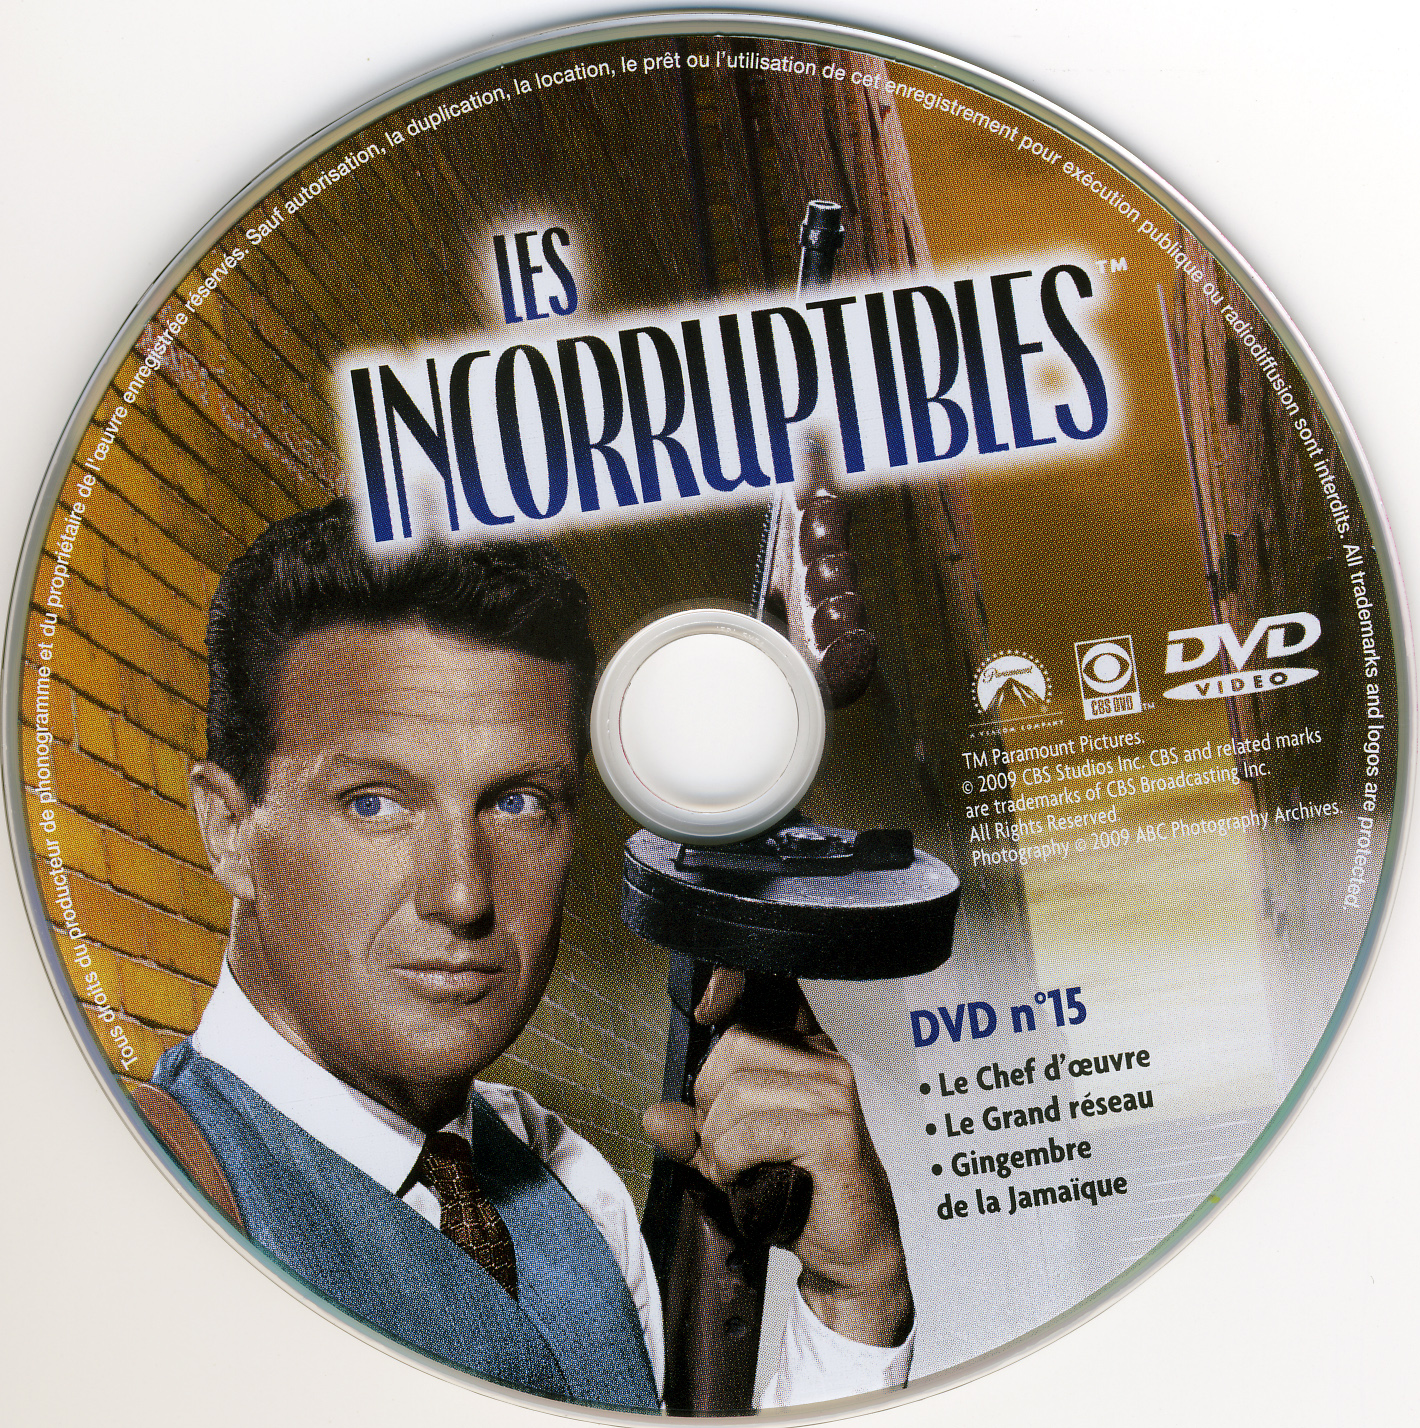 Les incorruptibles intgrale DVD 15 stick